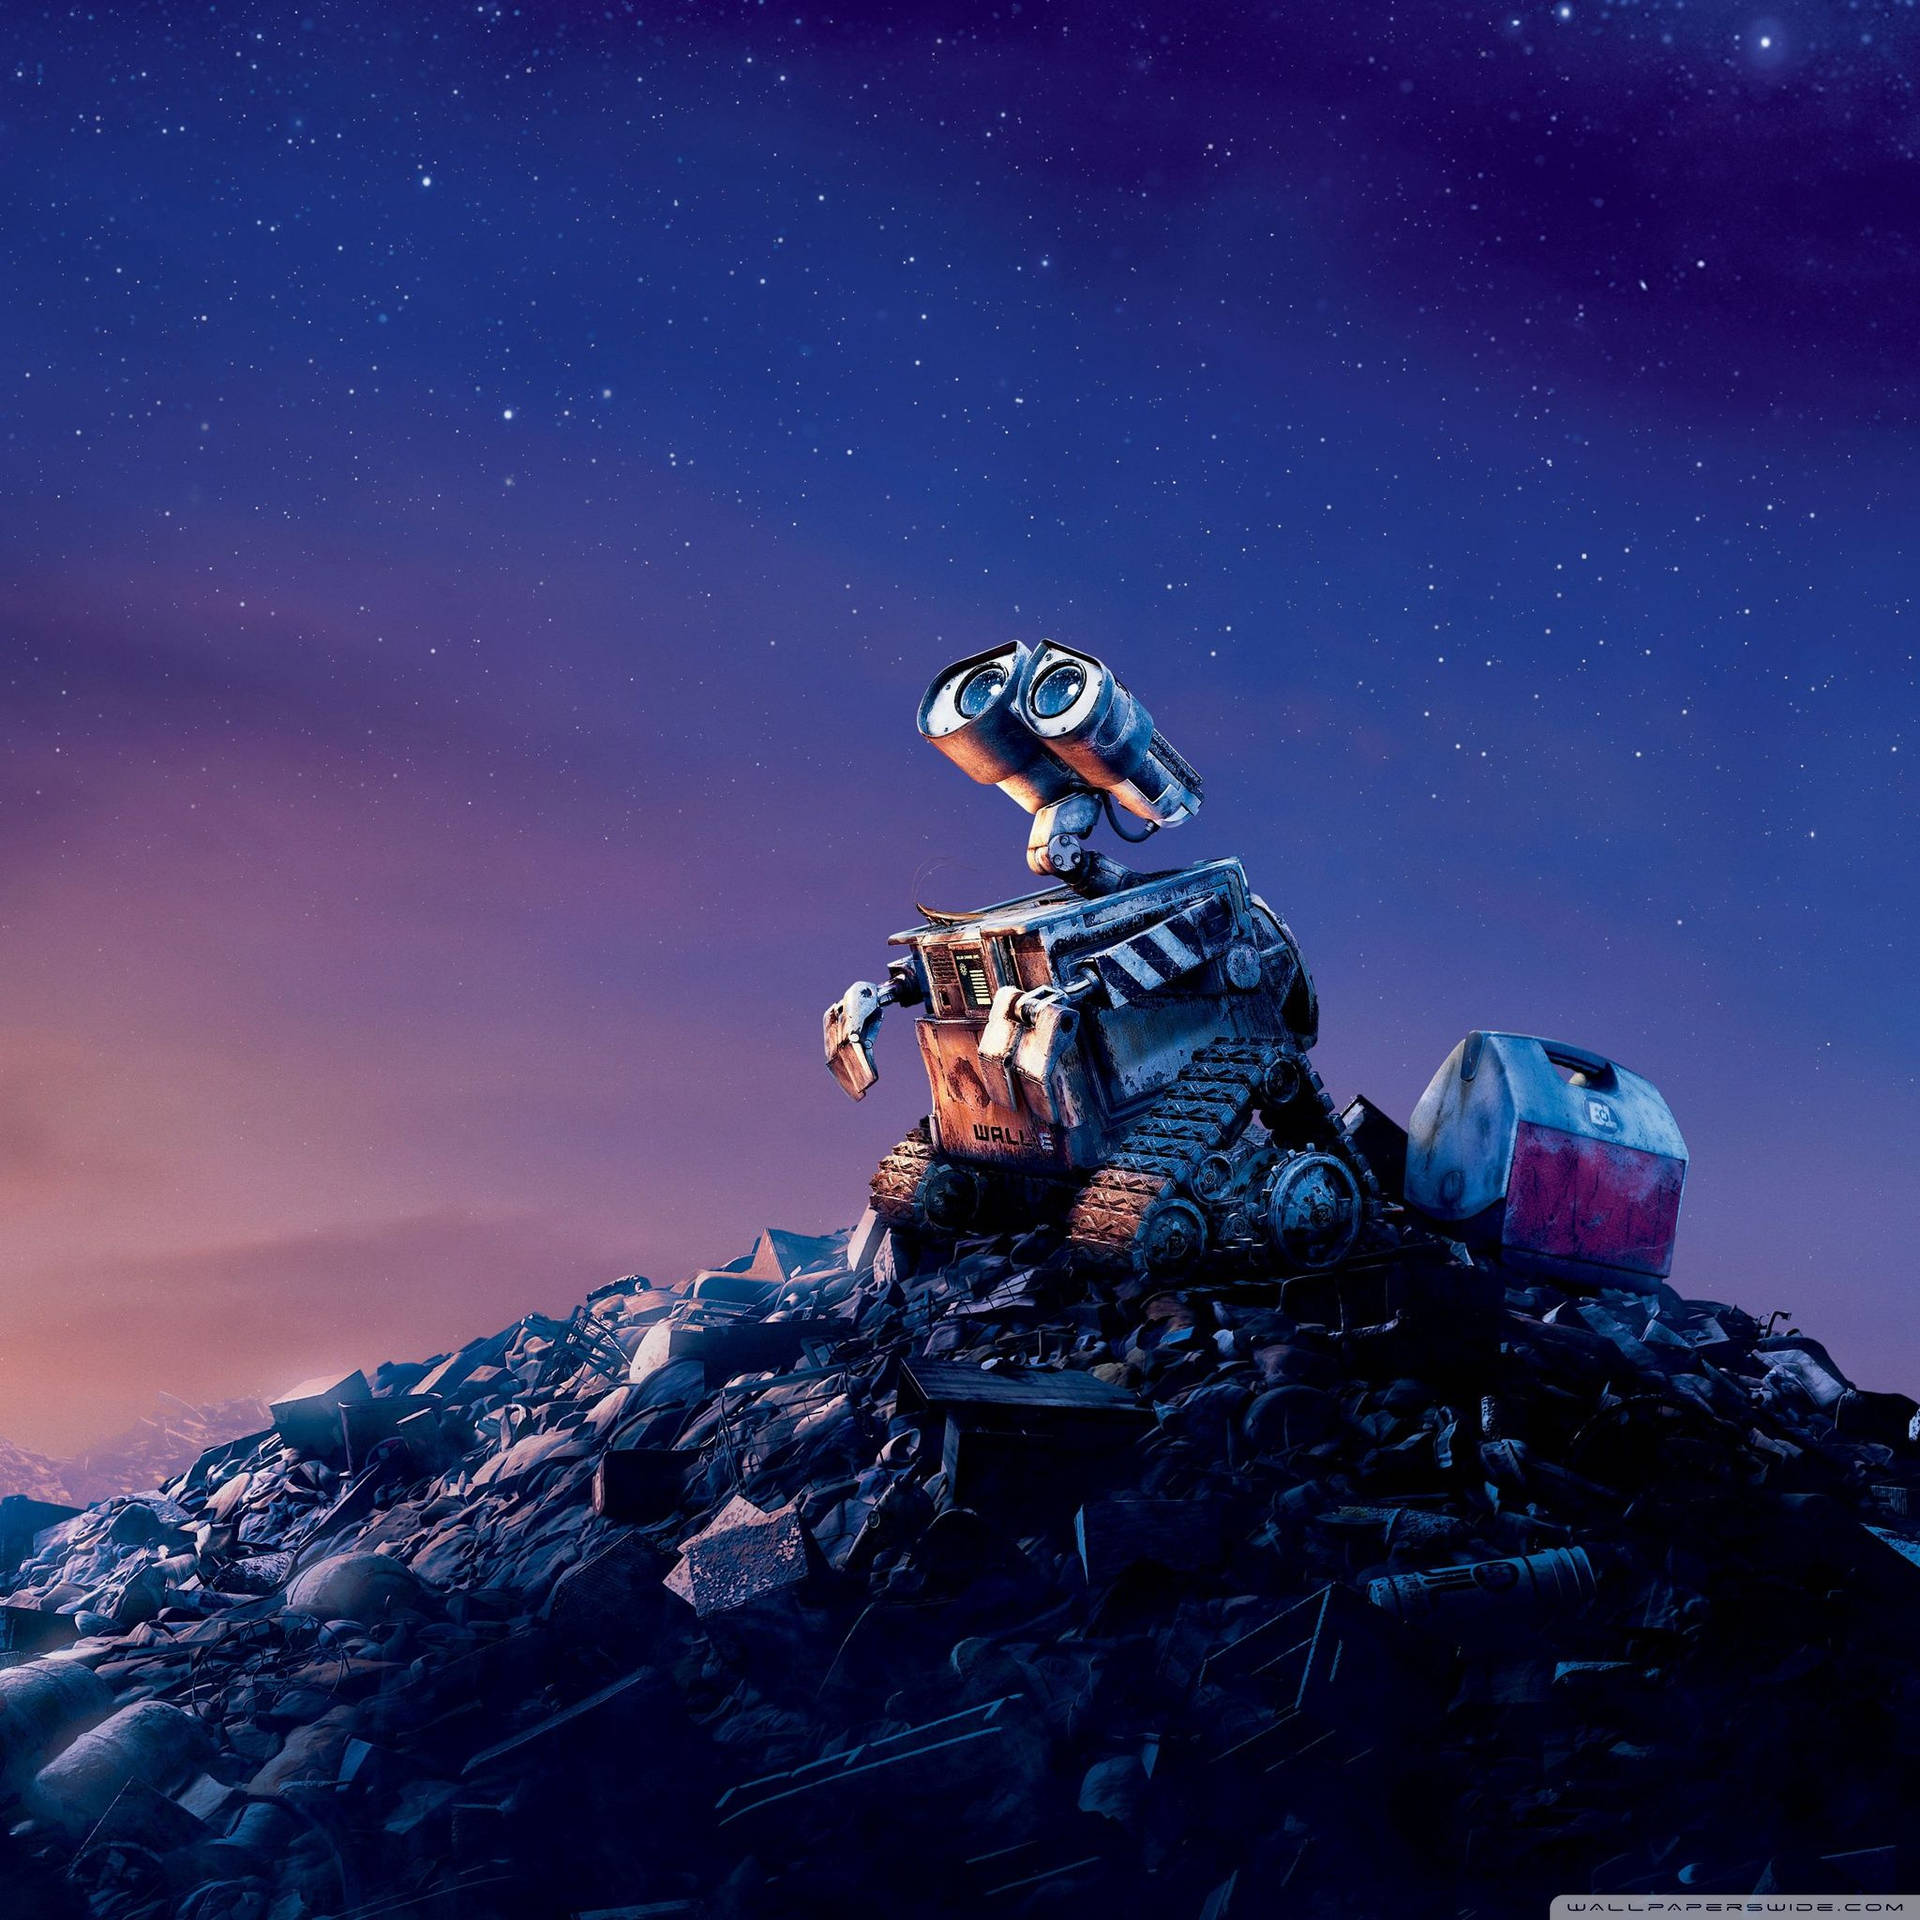 Wall-e Night Sky Ipad Retina